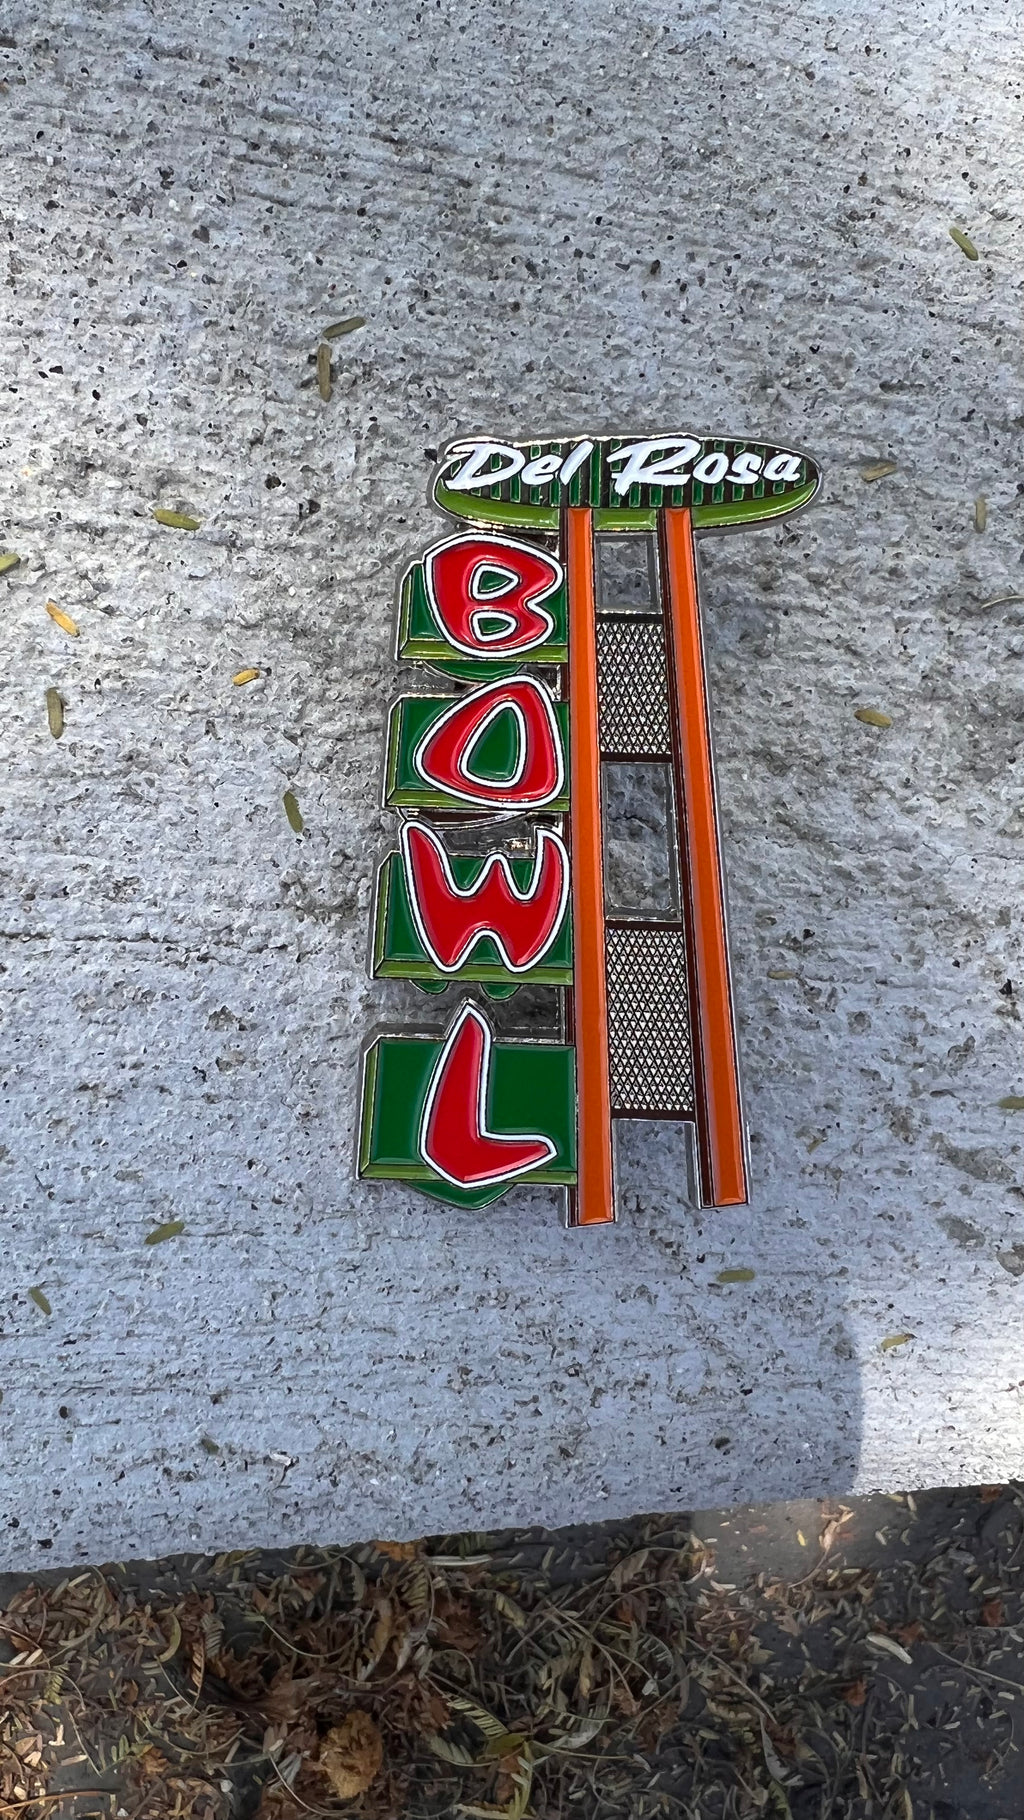 Del Rosa Bowl Pin